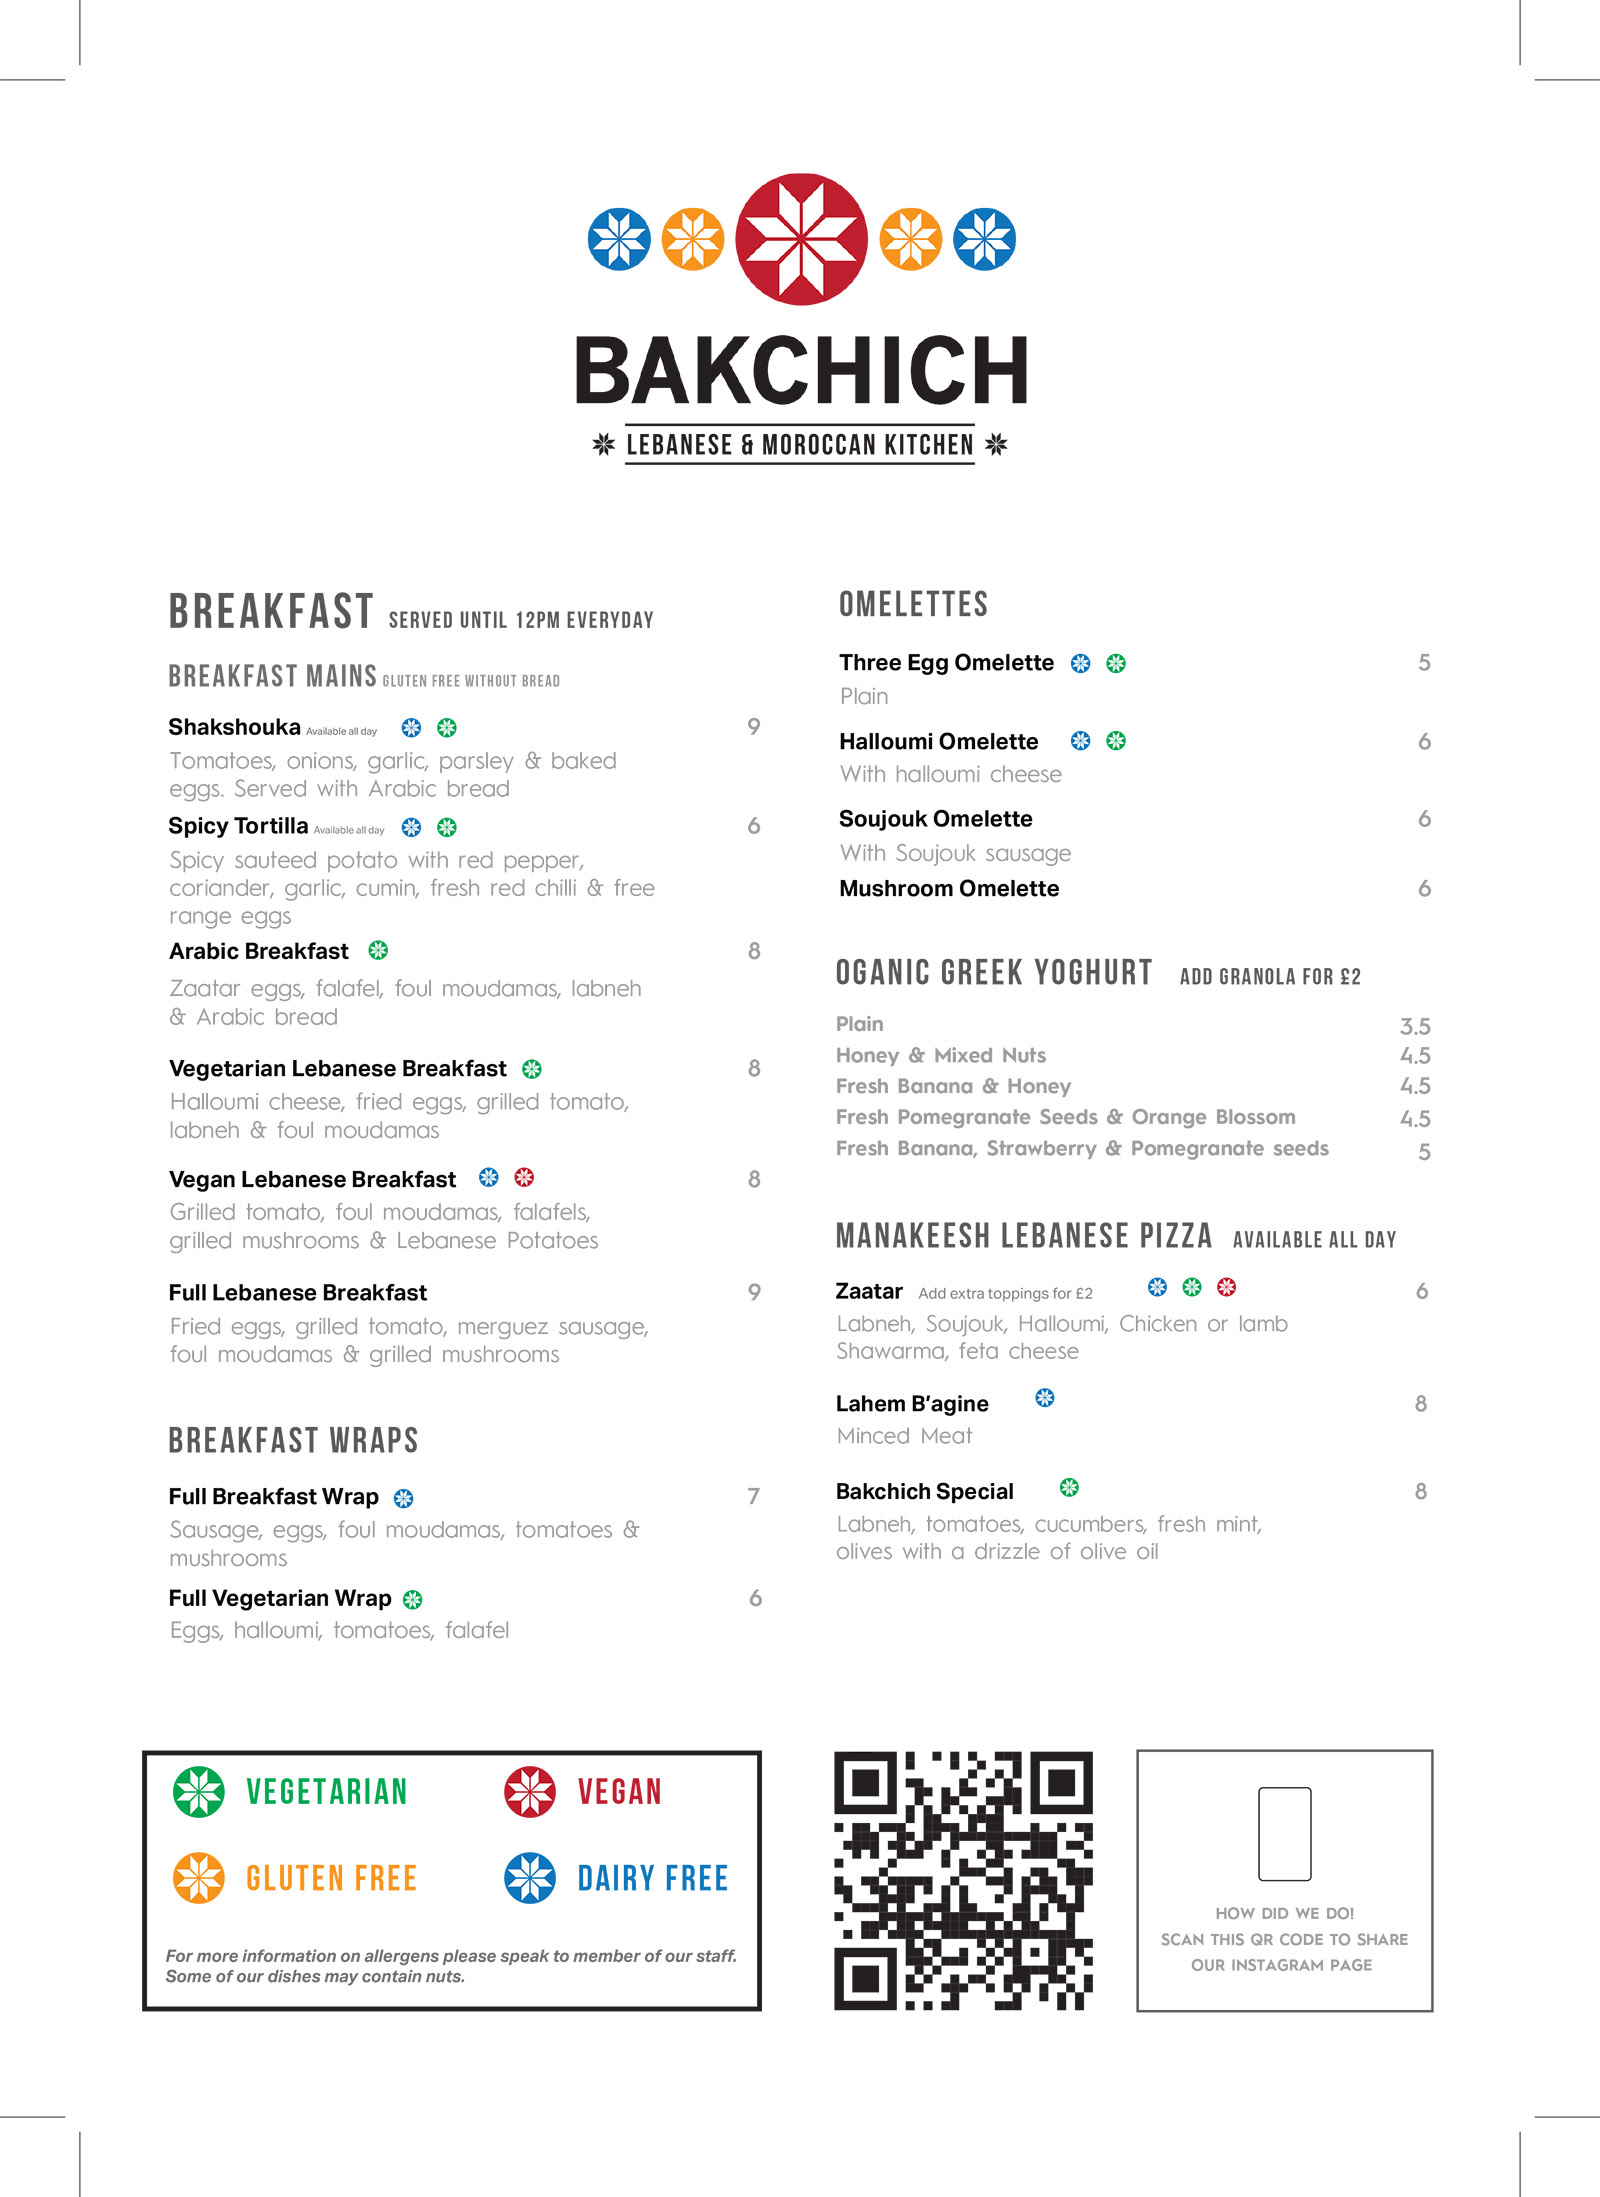 Bakchich menu 2021